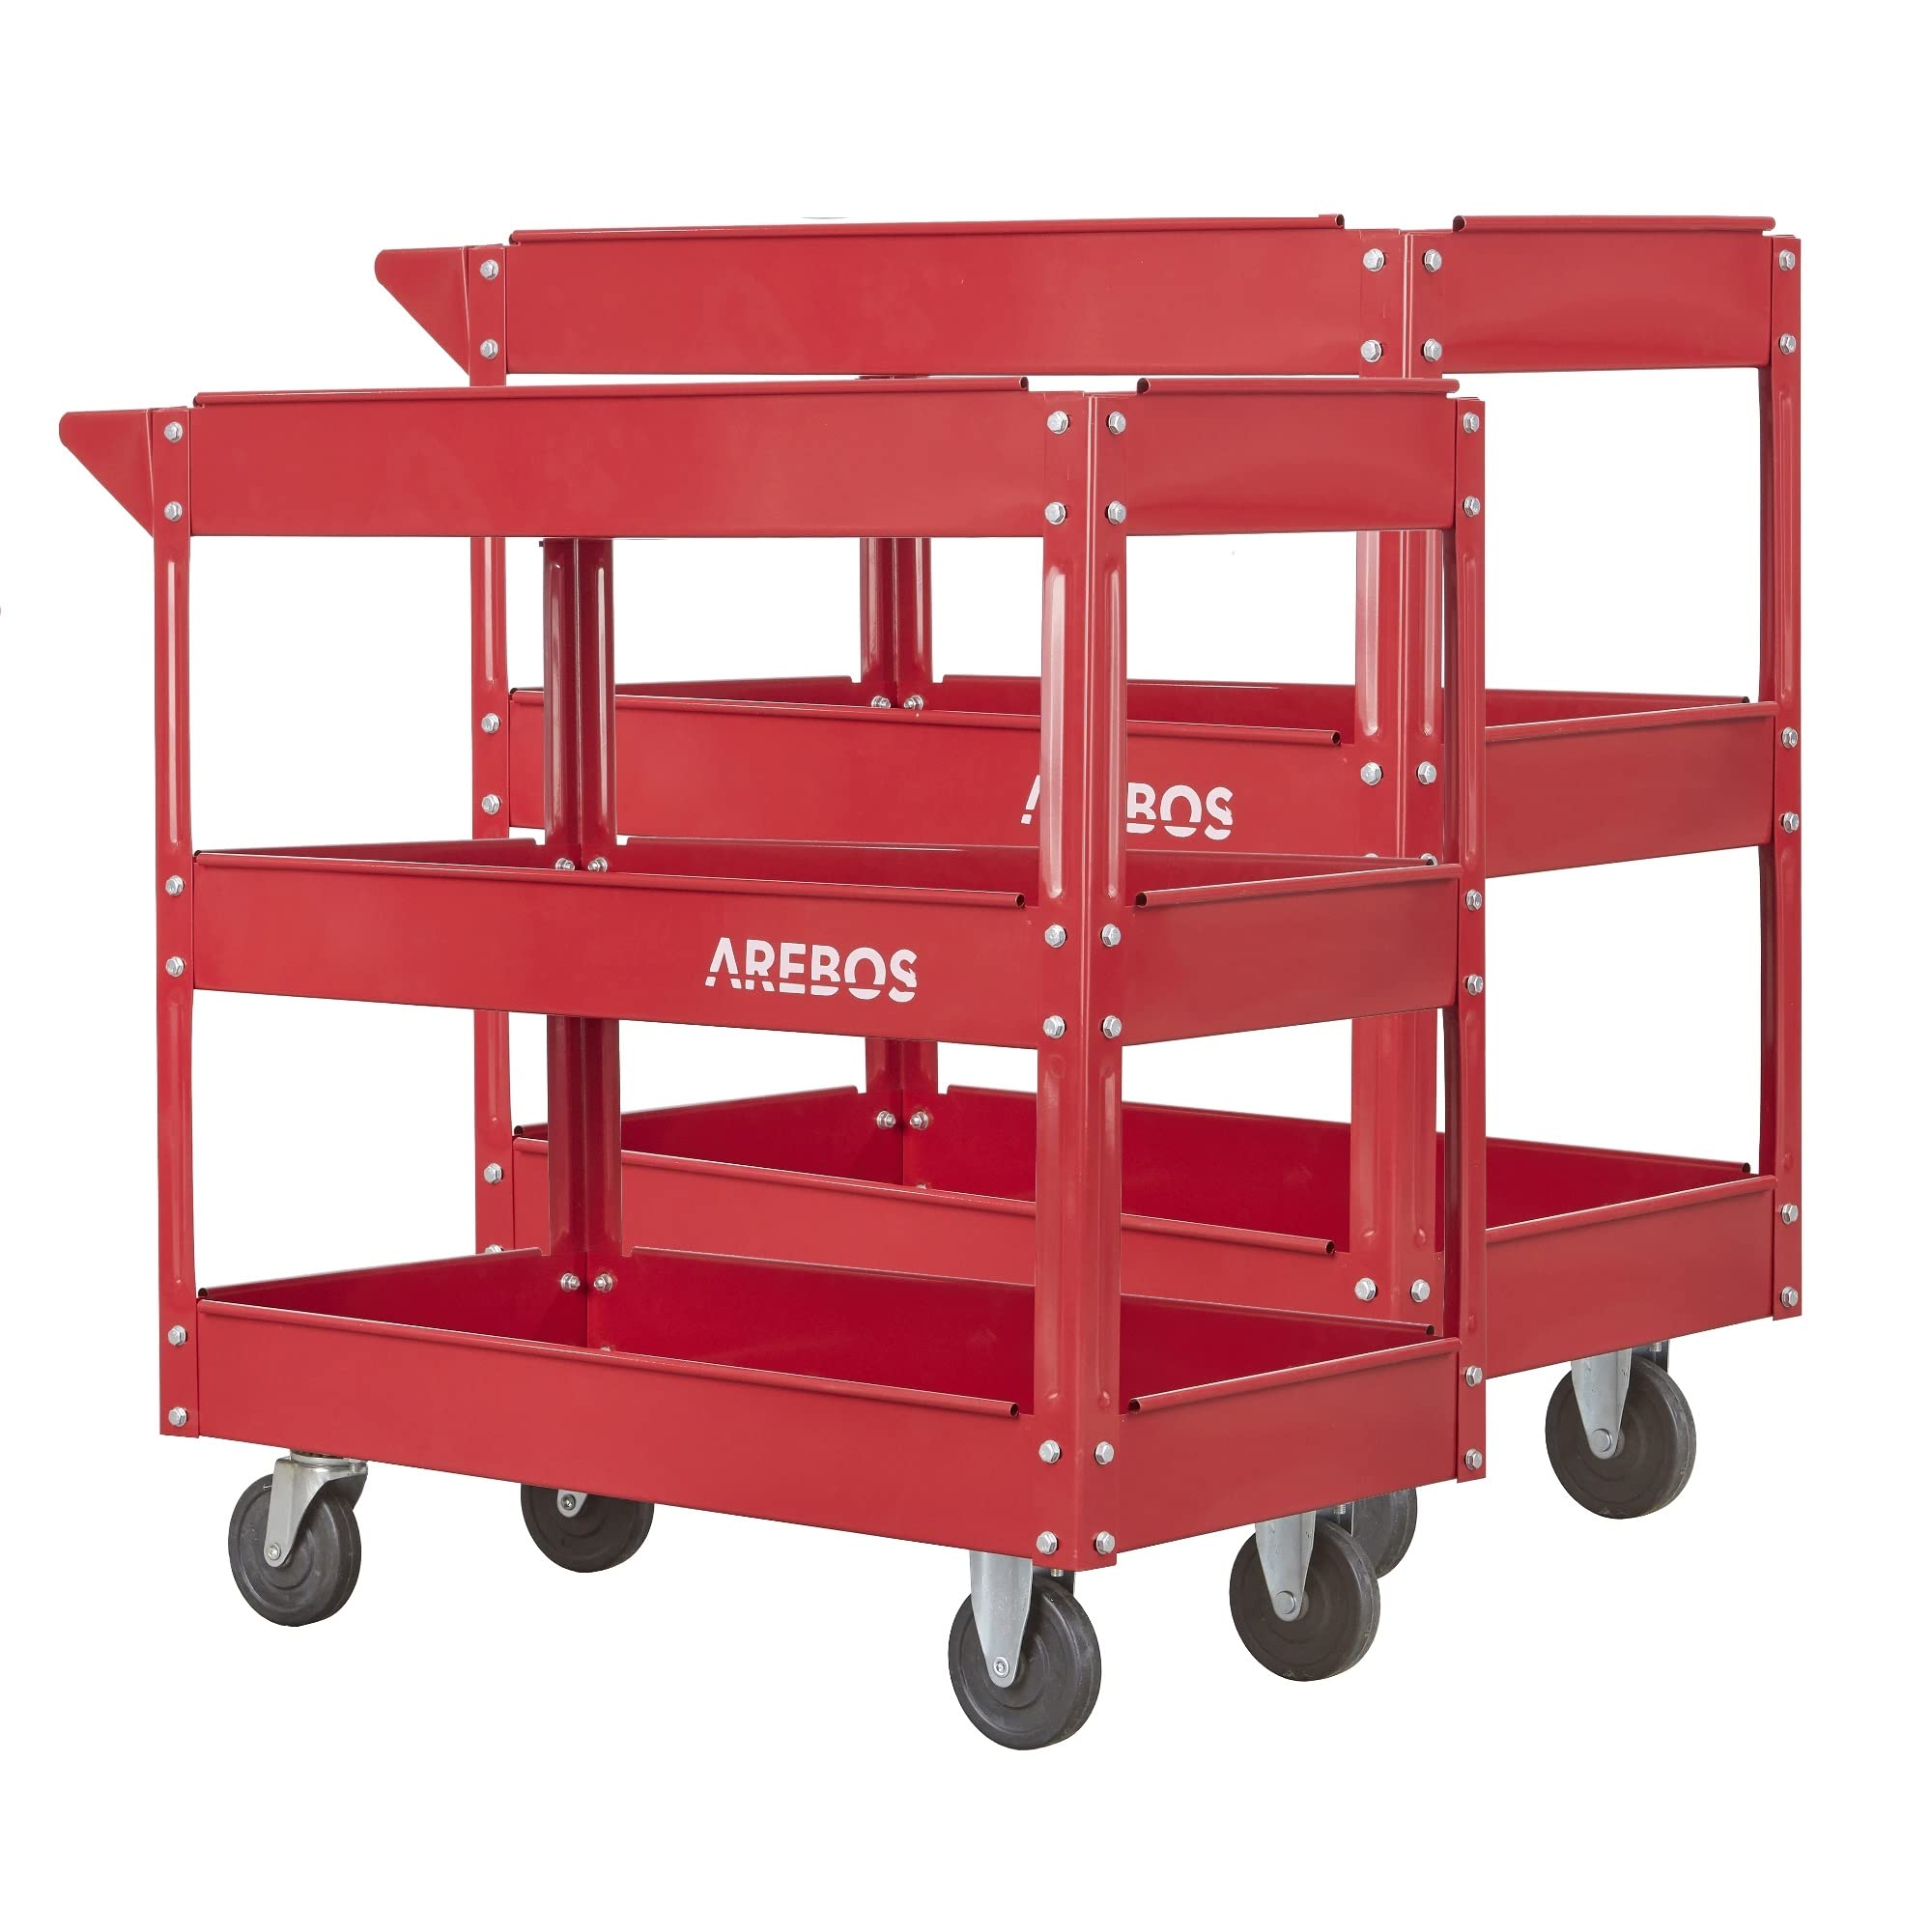 Arebos Werkstatt-Rollwagen Montagewagen | Werkzeugwagen | Belastbarkeit bis zu 100 kg | 3 Fächer - 2er Set